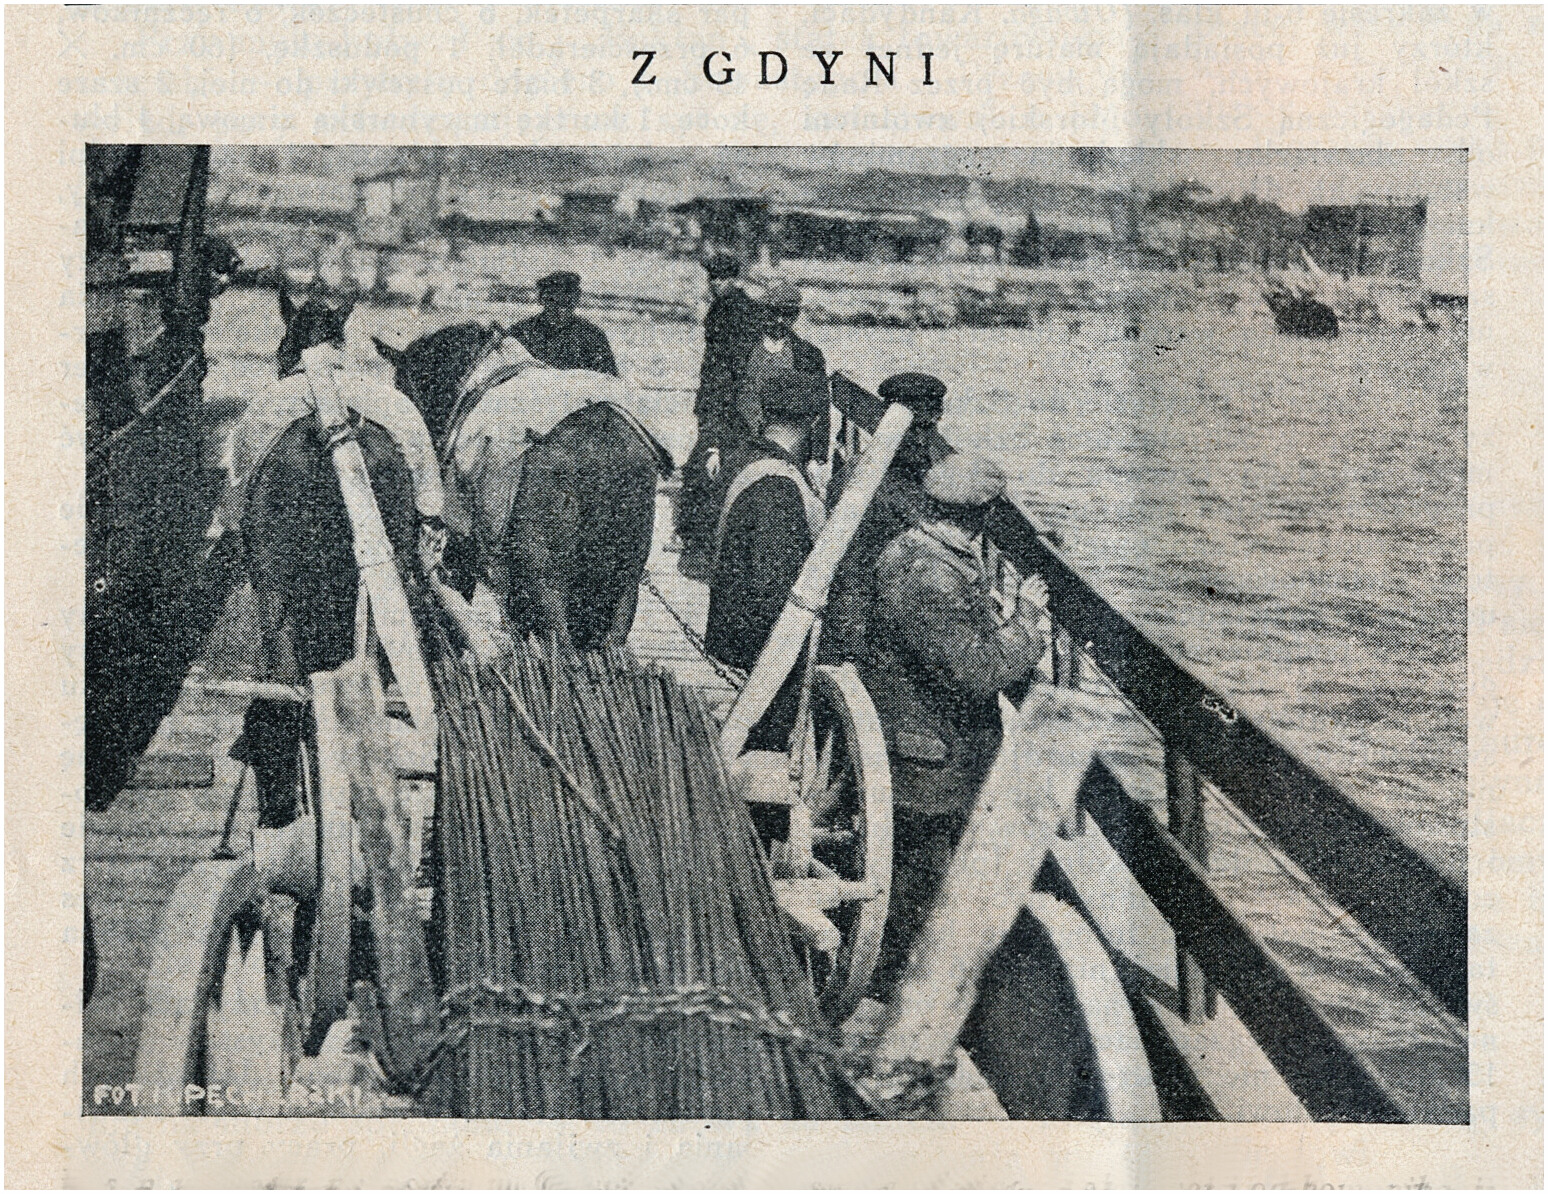 Prom na Oksywie 1927